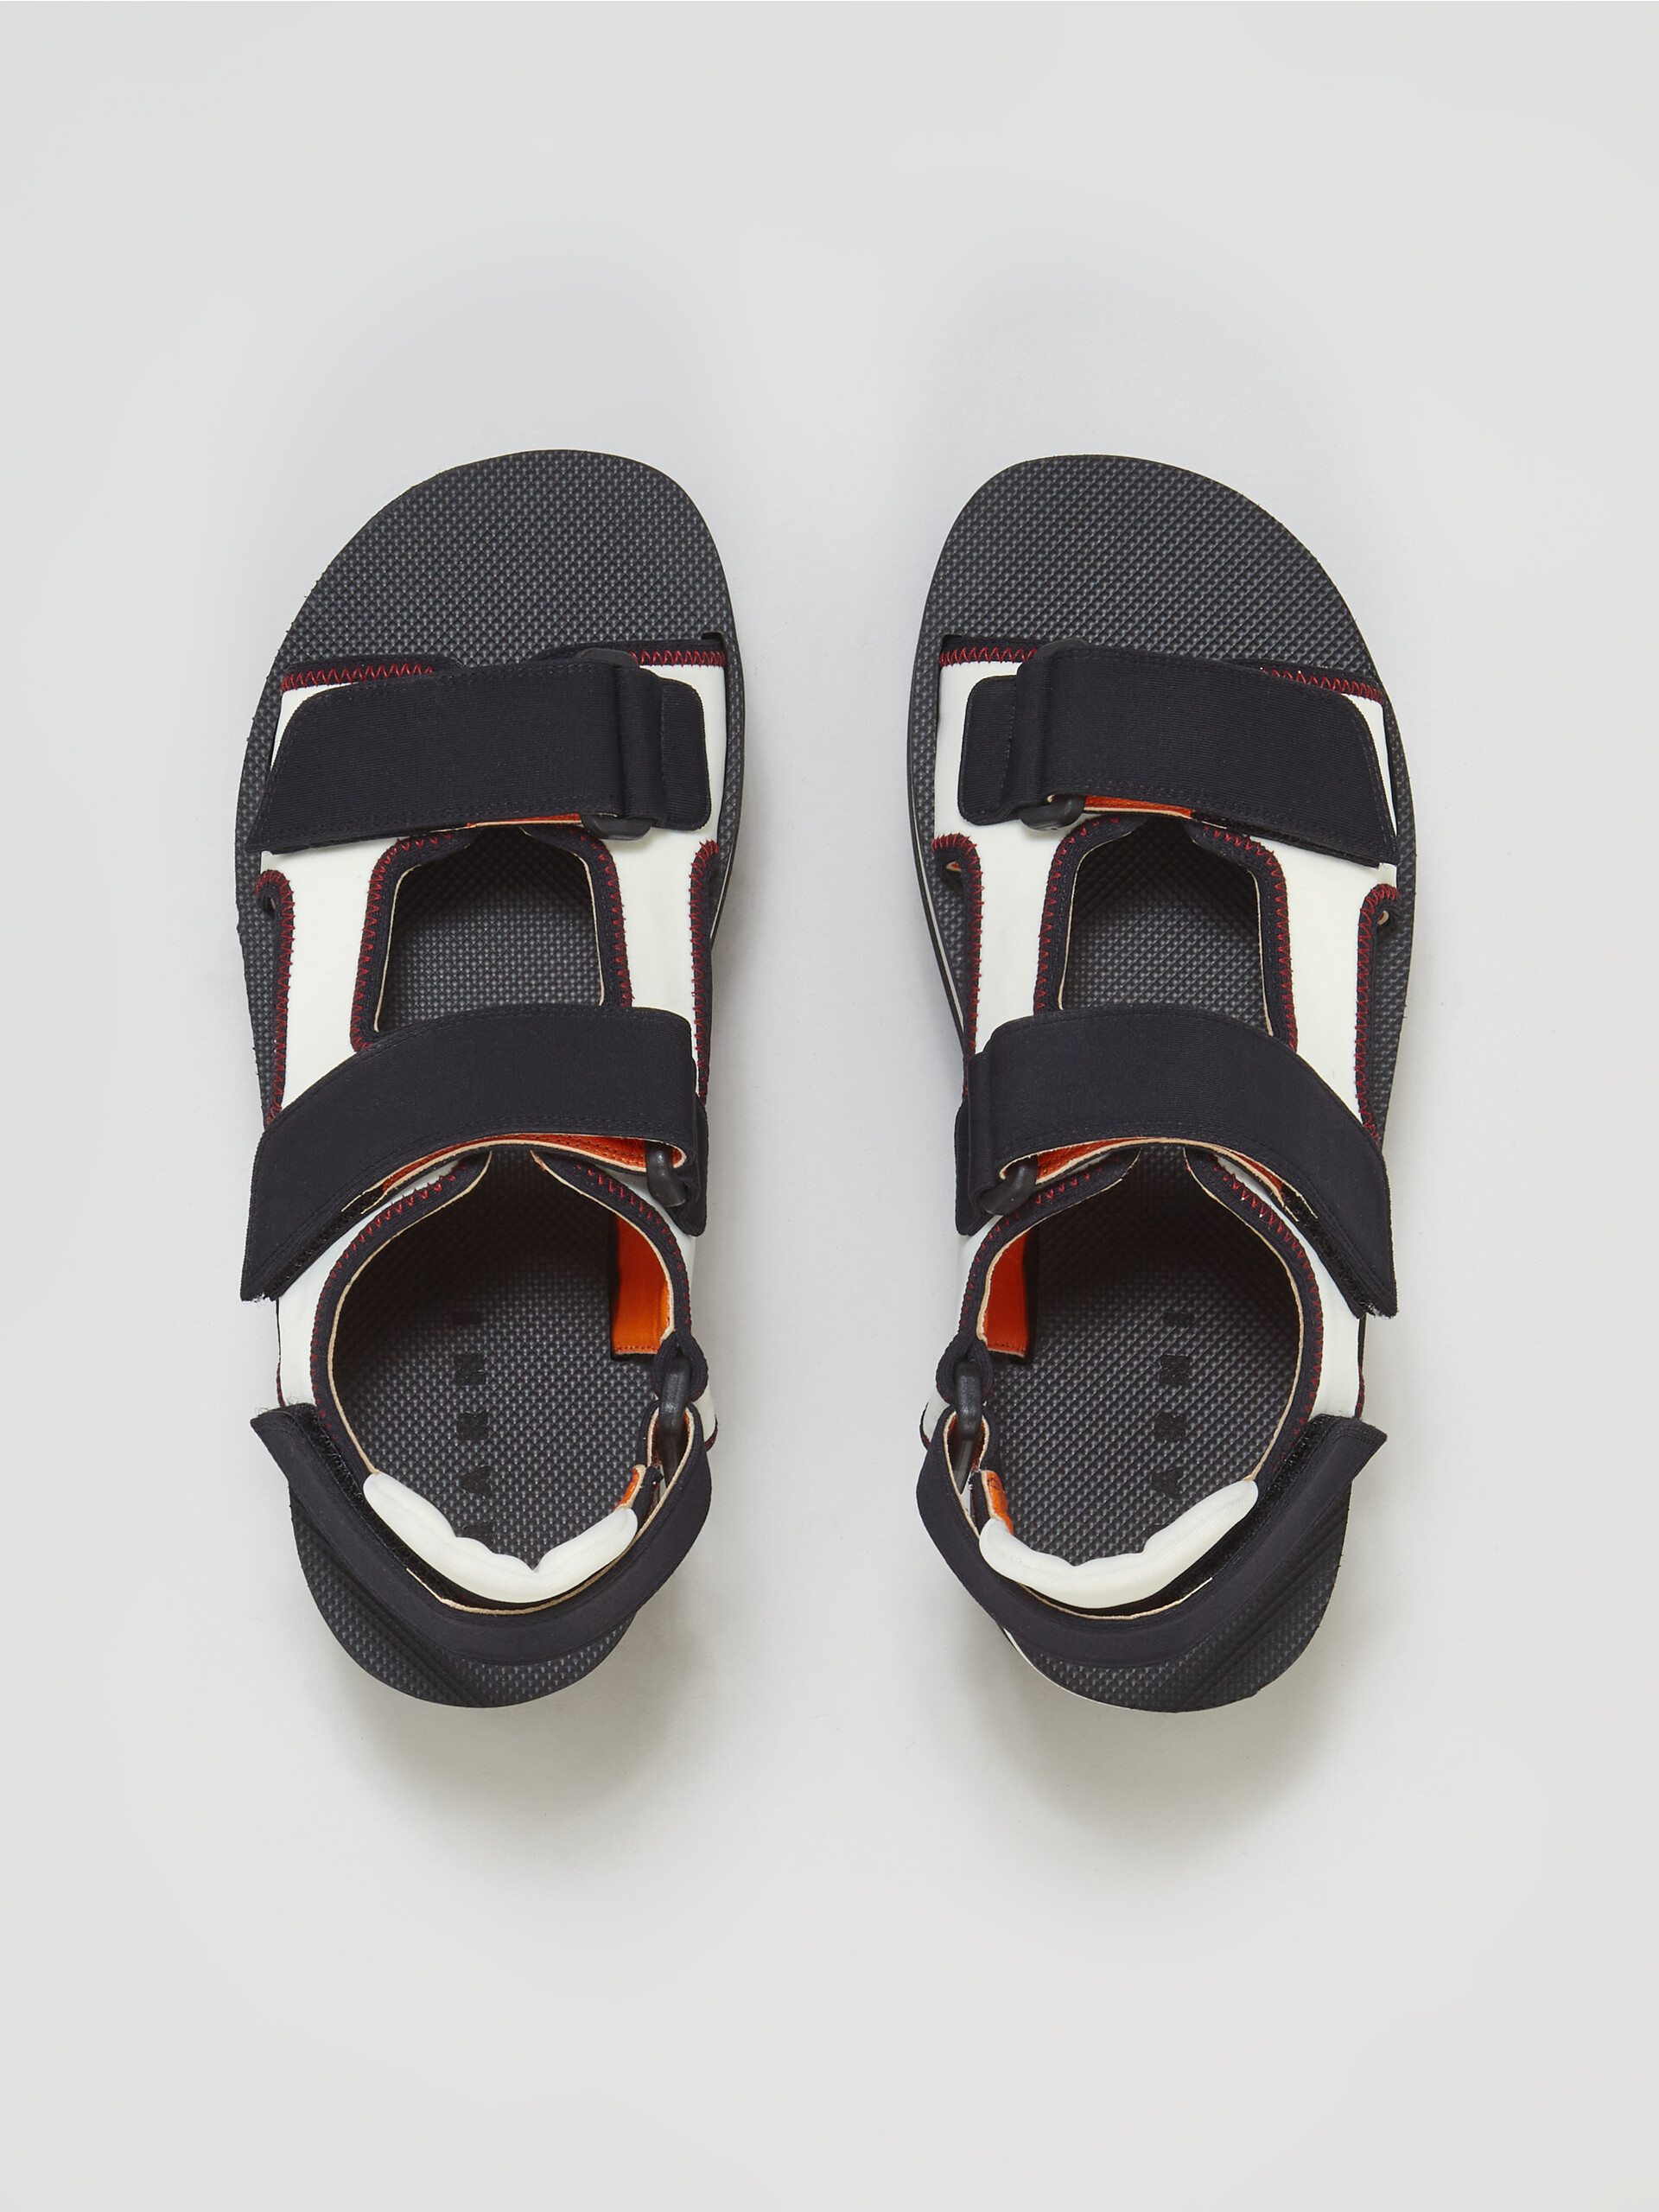 Sandalo in tessuto tecnico nero e bianco - Sandali - Image 4